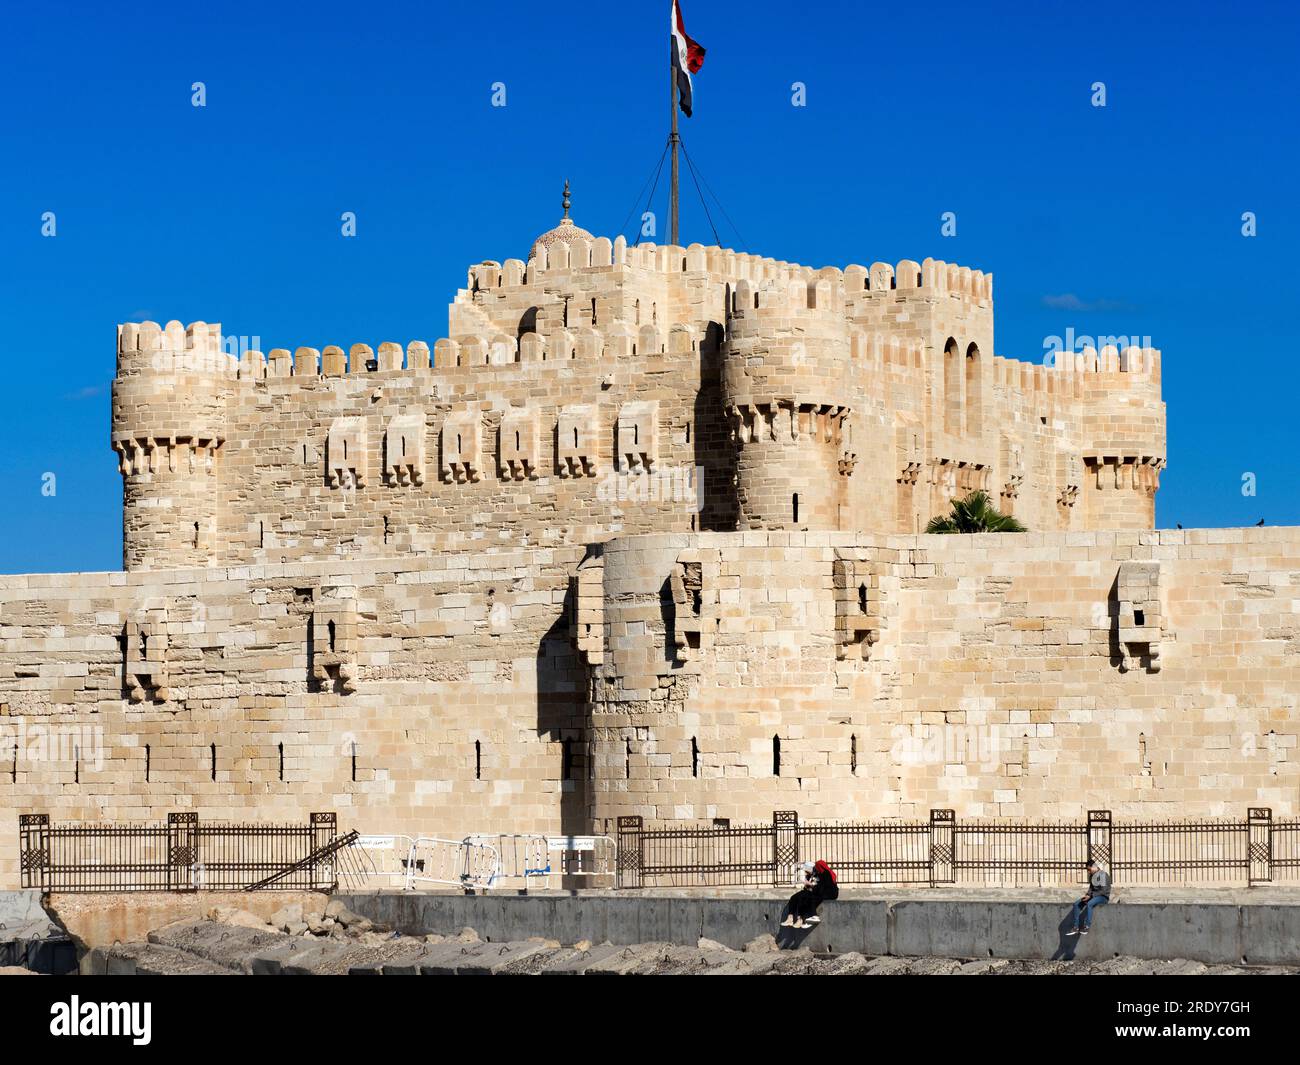 Situata sulla punta settentrionale dell'isola di Pharos alla foce del porto orientale di Alessandria, la Cittadella di Qaitbay è una fortezza difensiva del XV secolo Foto Stock